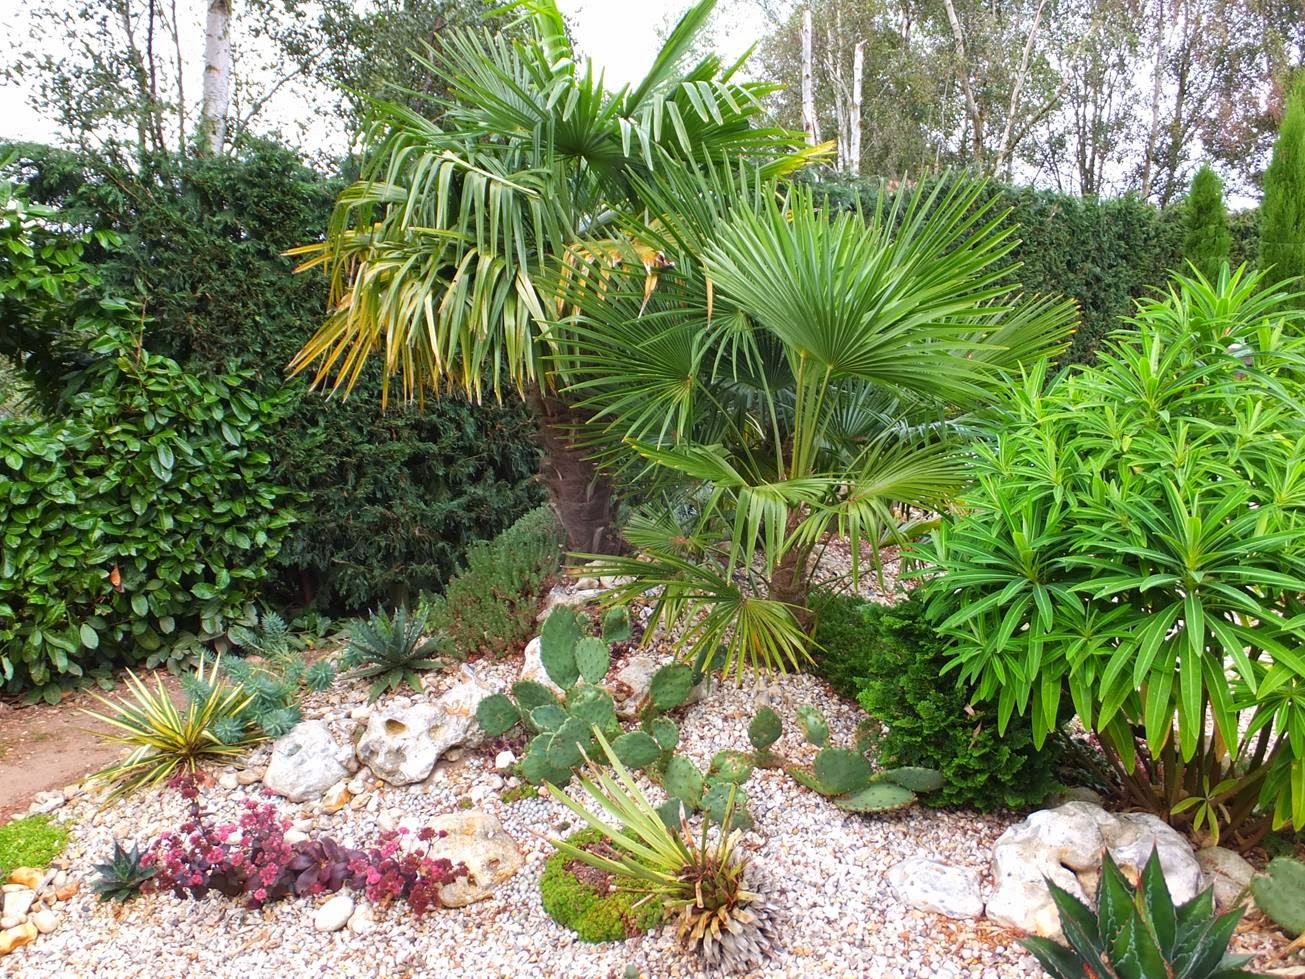 Alternative Eden Exotic Garden: A Day at Crete Lodge Exotic Garden